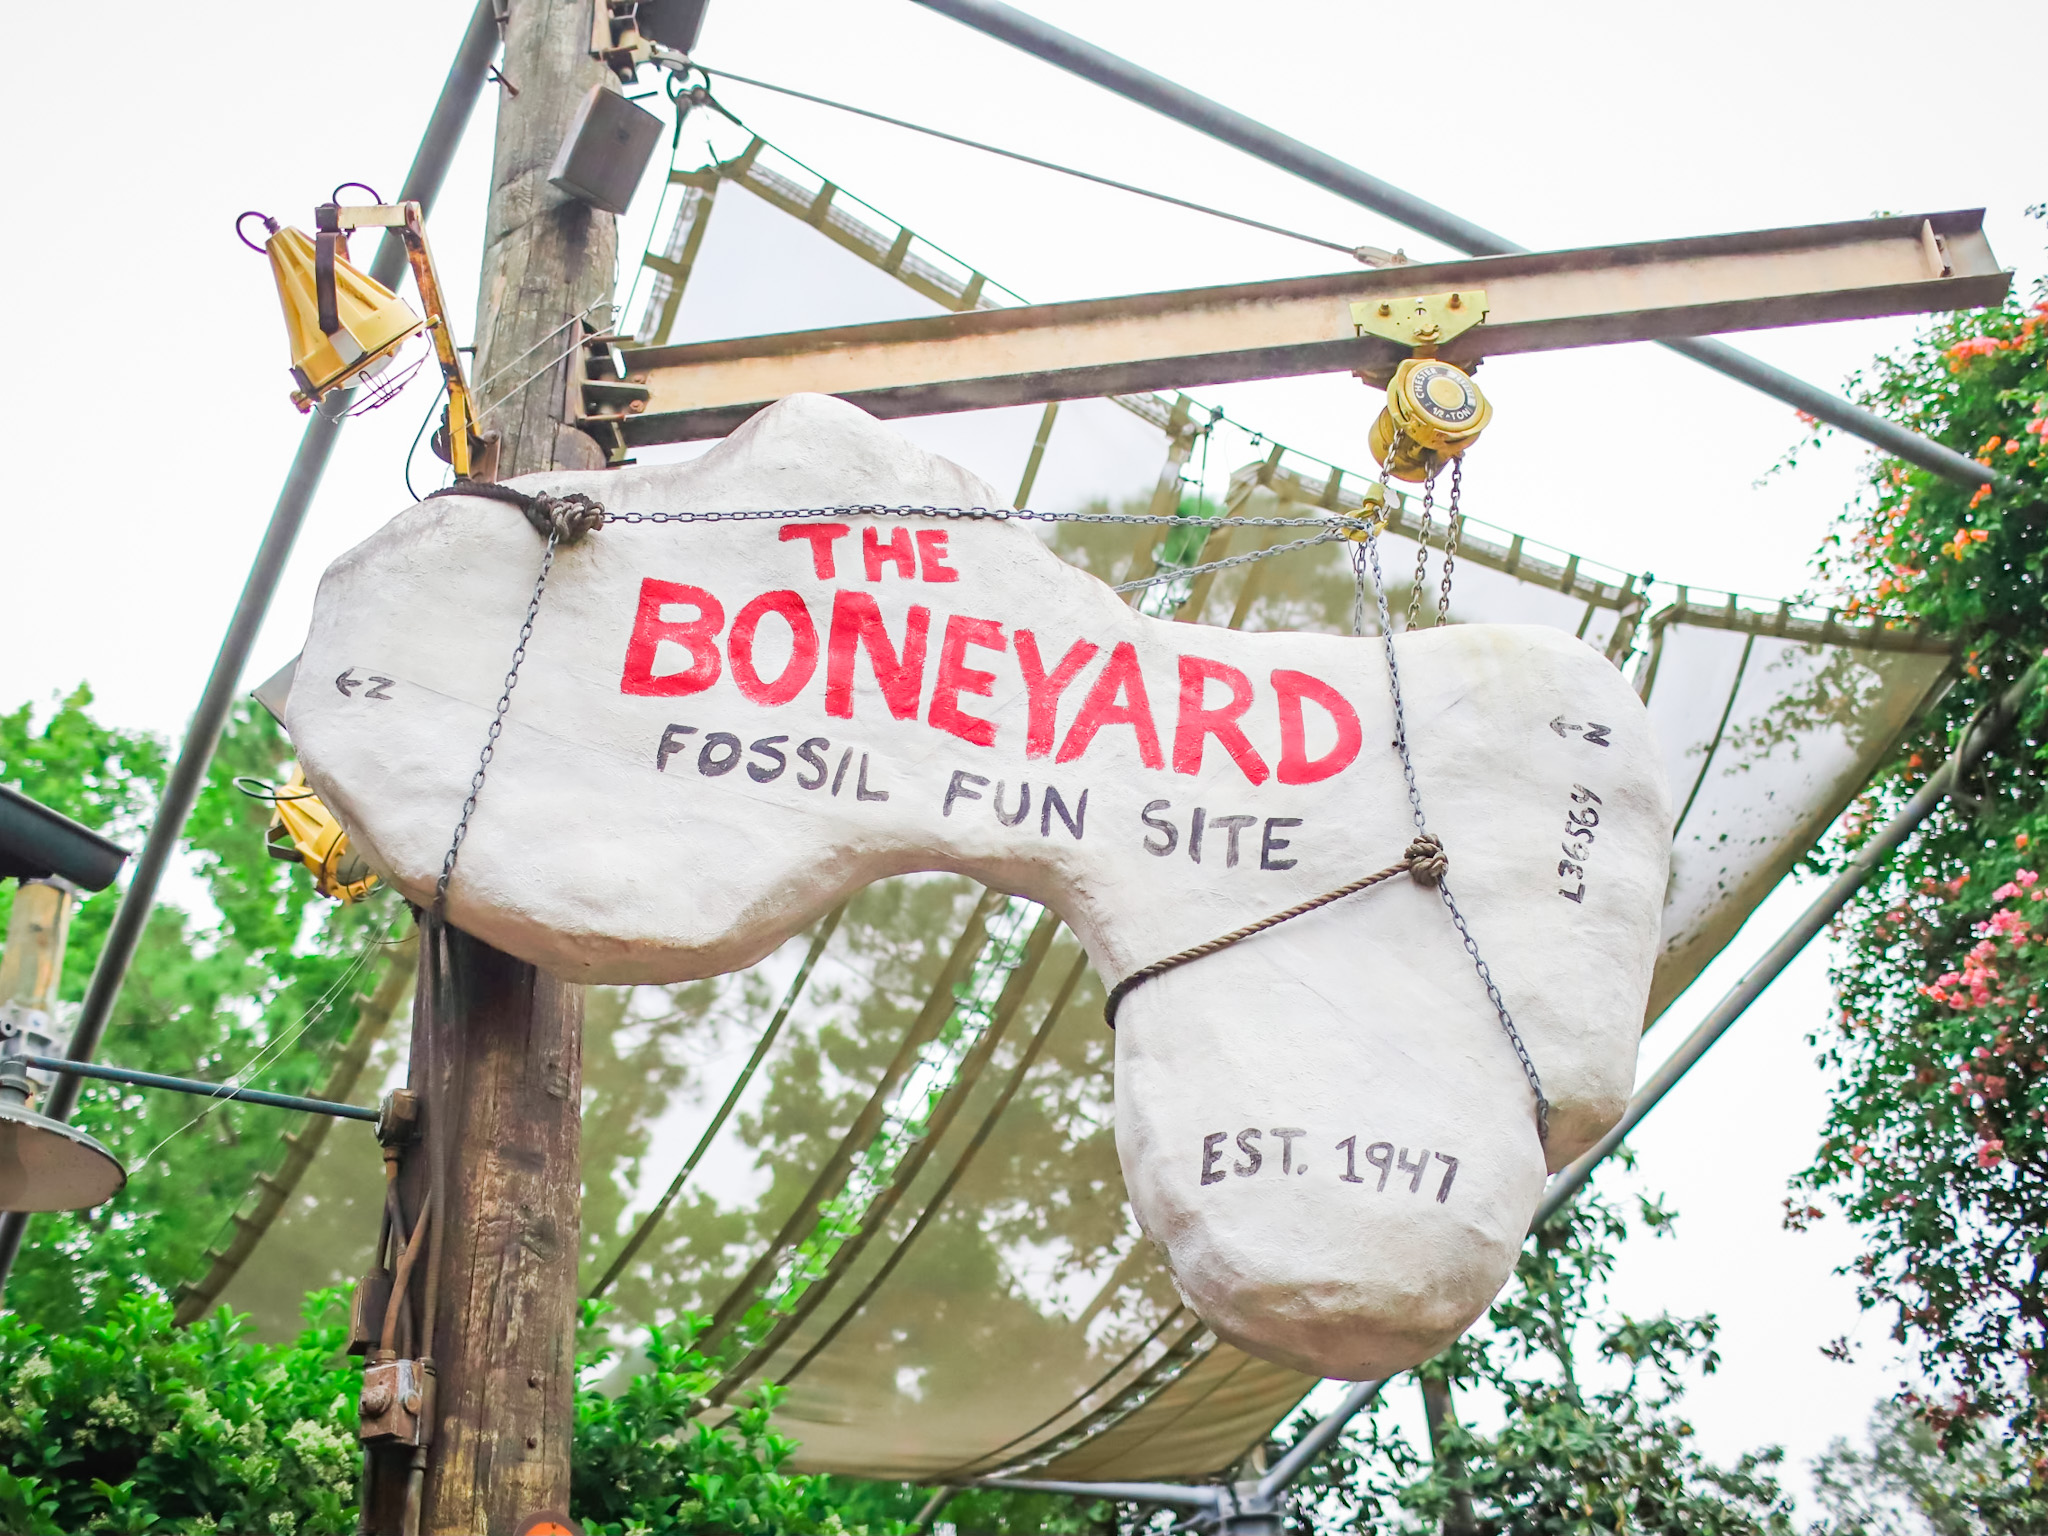 The Boneyard at Animal Kingdom theme park